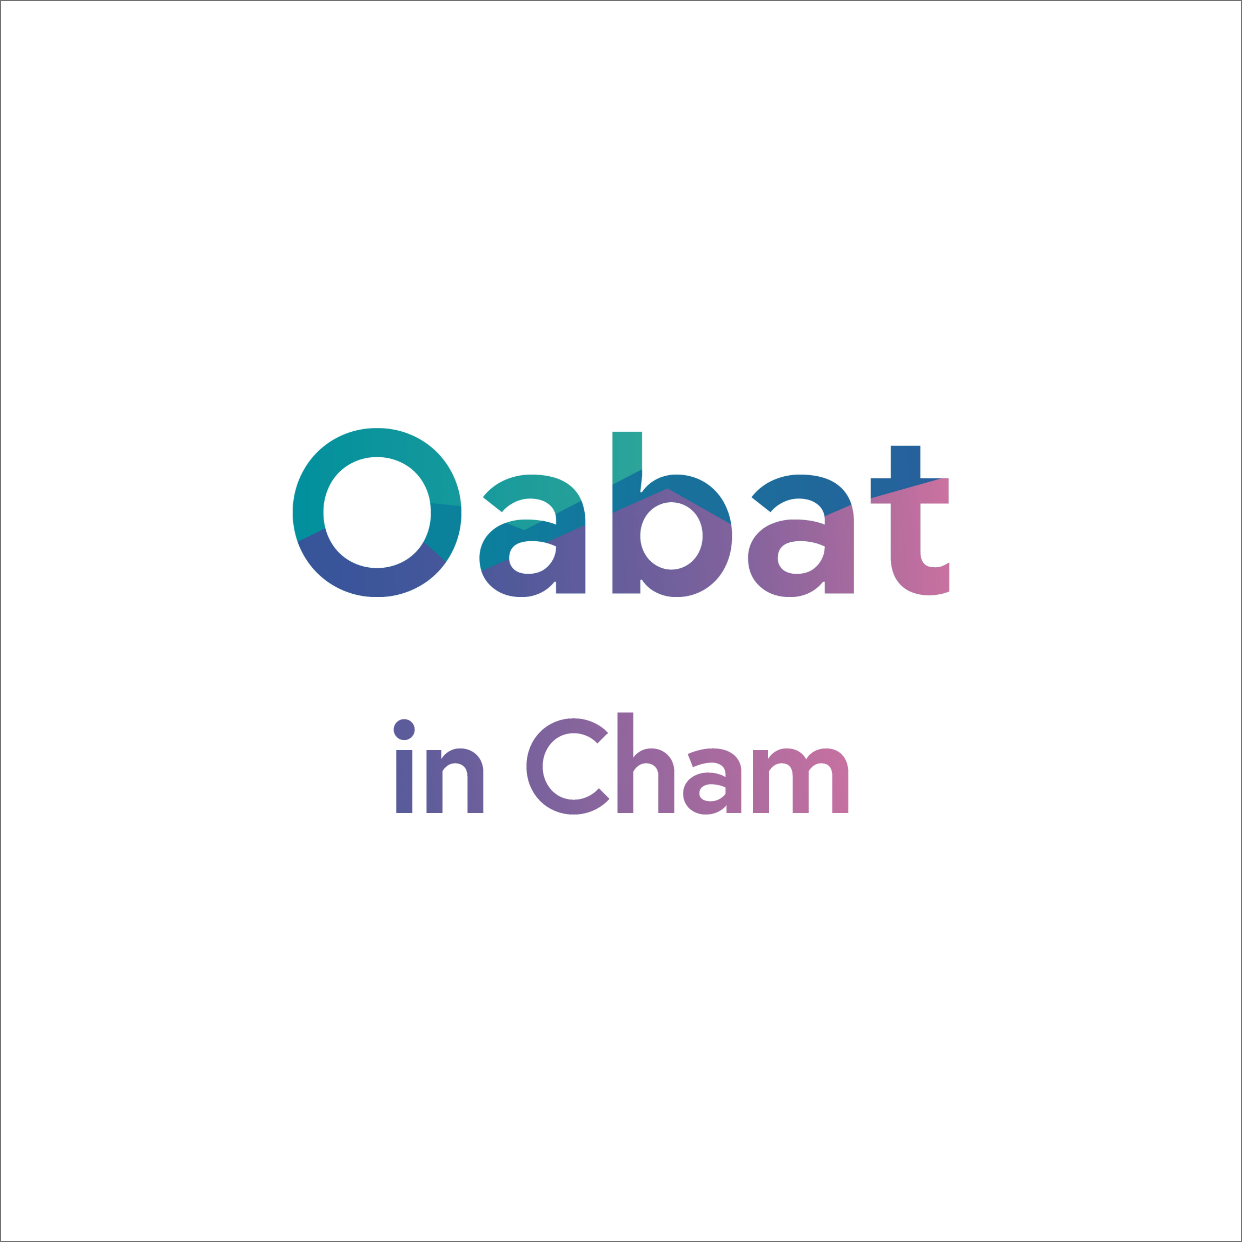 Zur externen Seite Ausbildungsplätze in Cham unter www.oabat.de